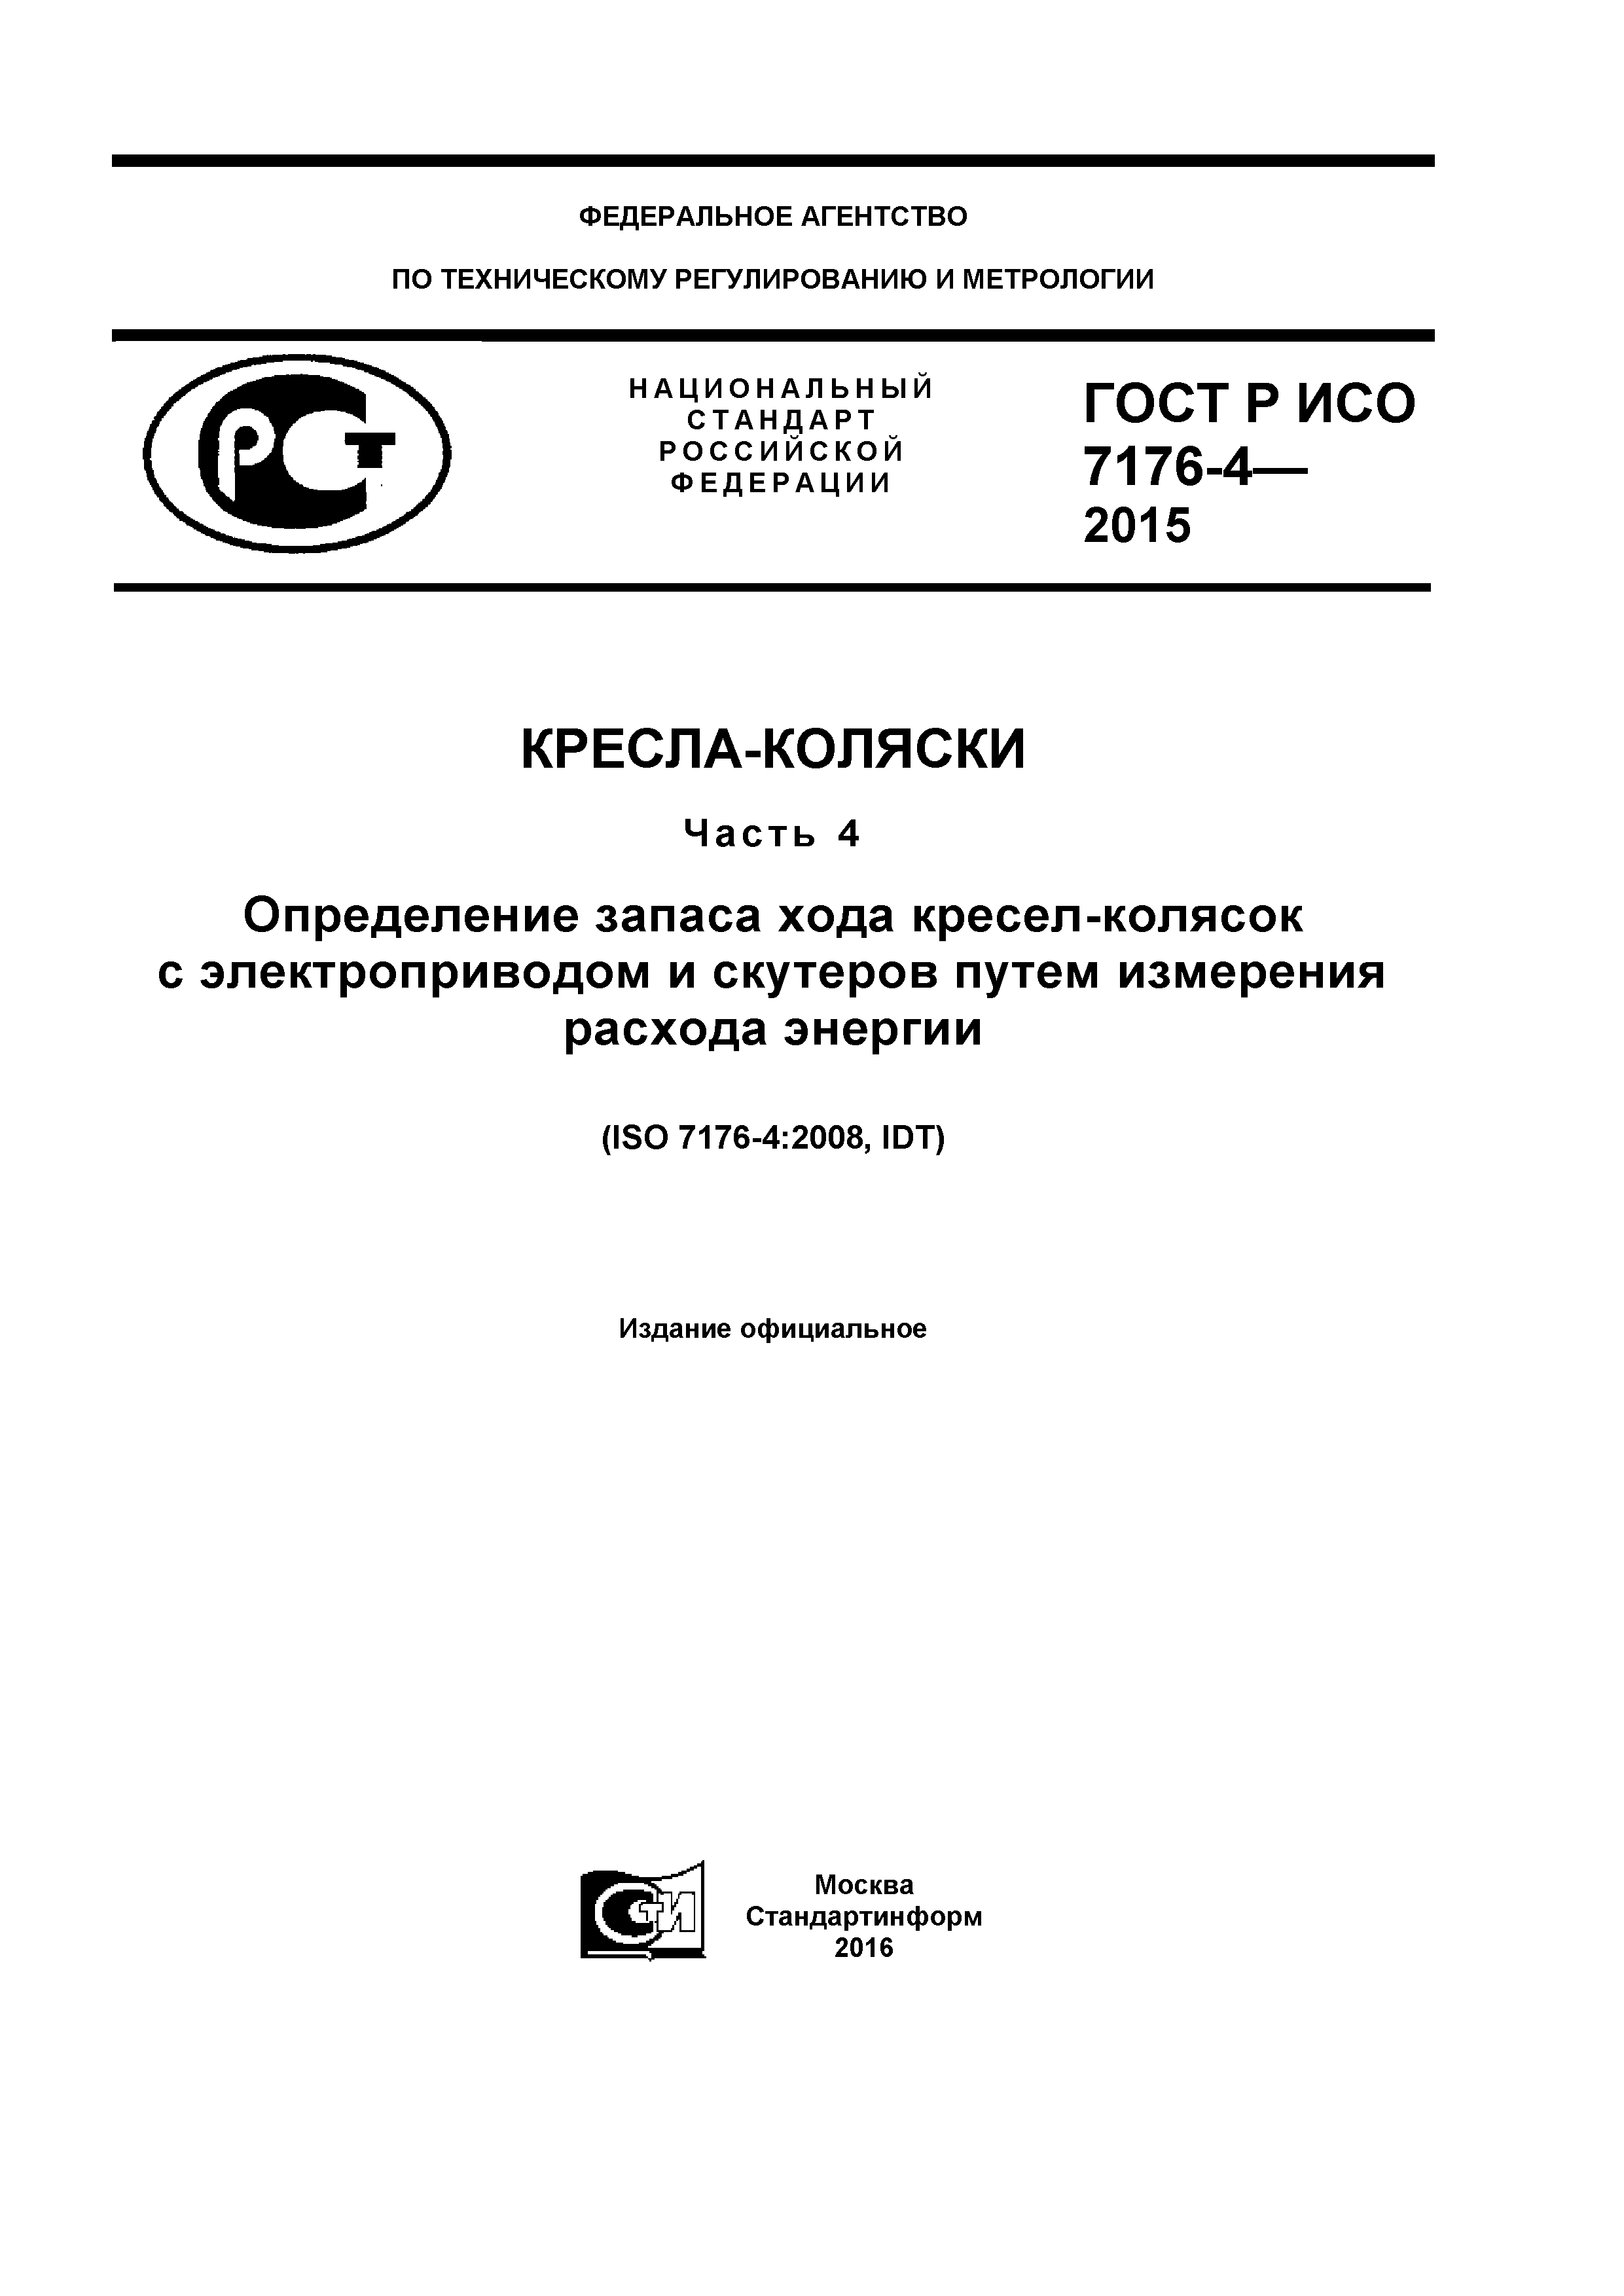 ГОСТ Р ИСО 7176-4-2015